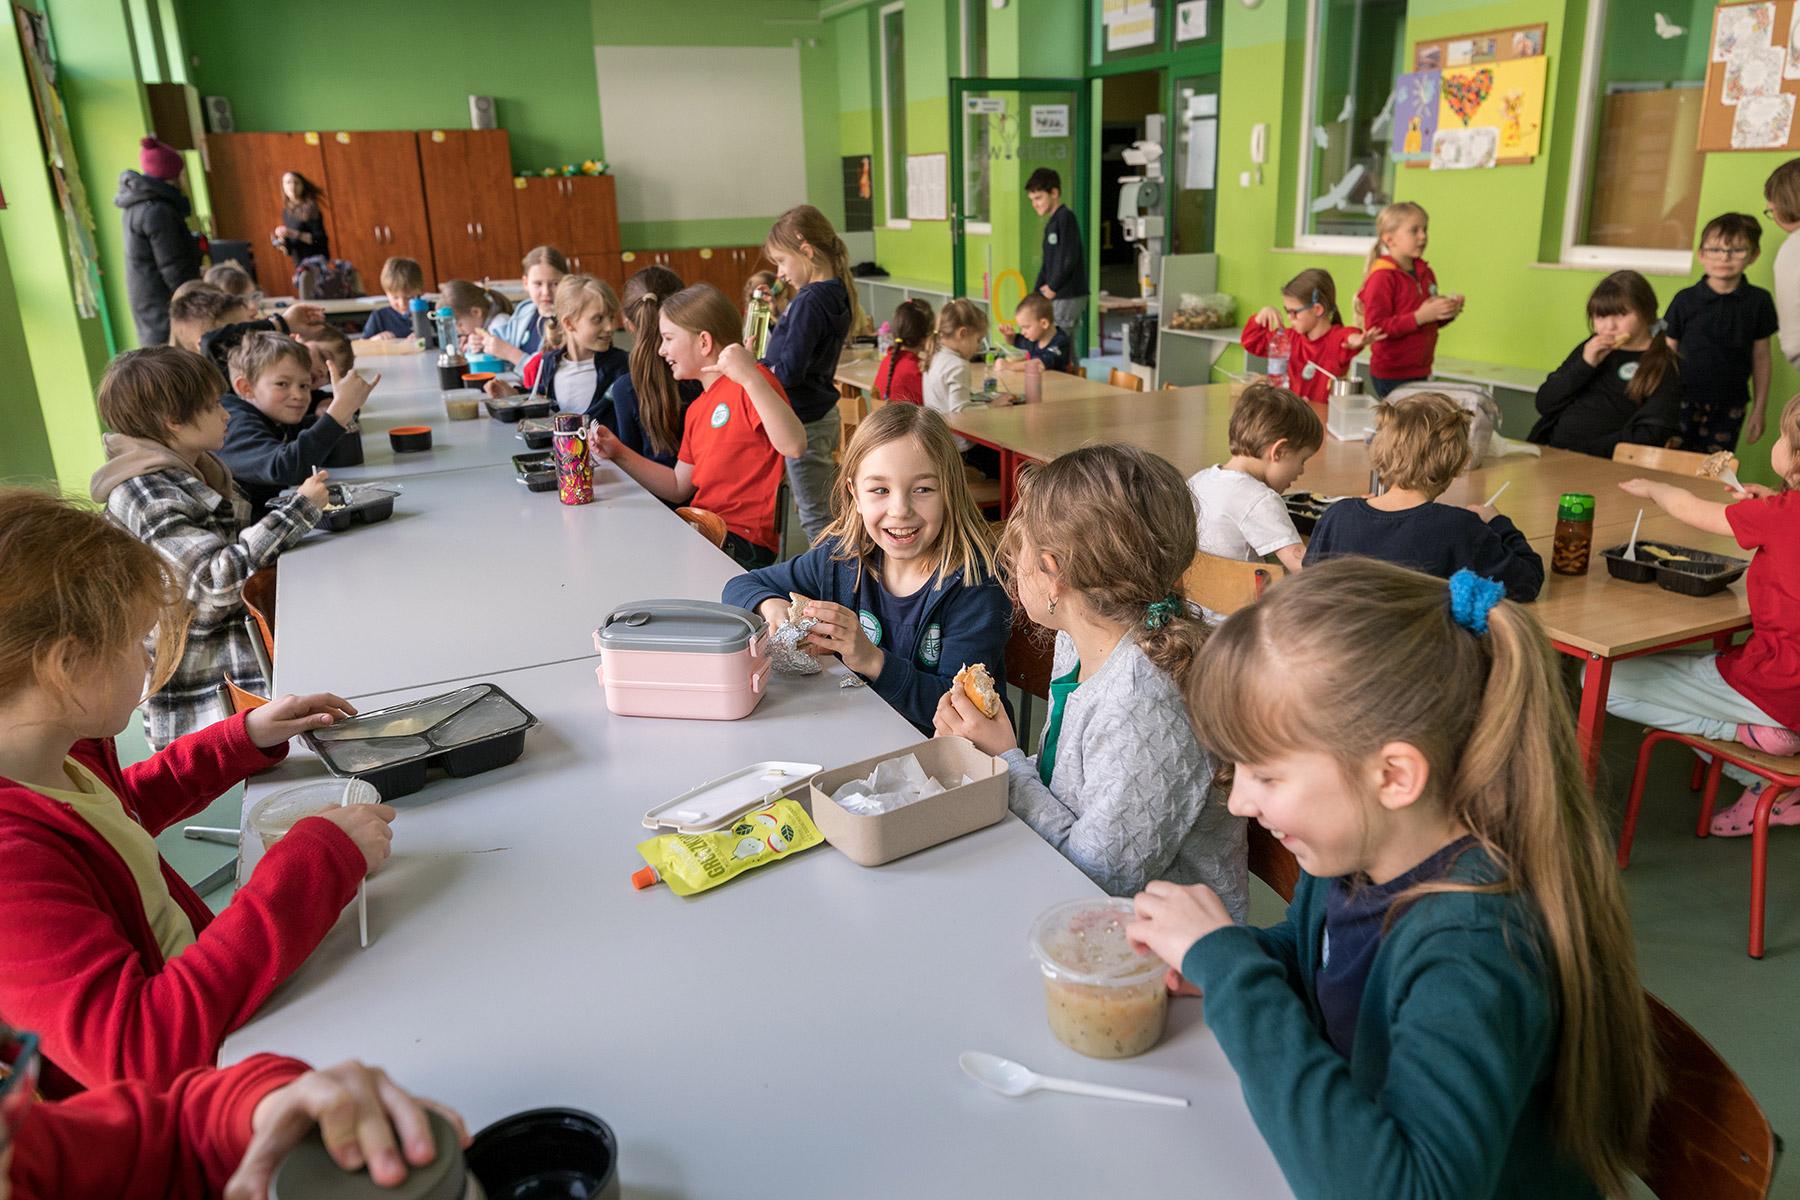 Children share a meal during recess. Photo: LWF/ Albin Hillert